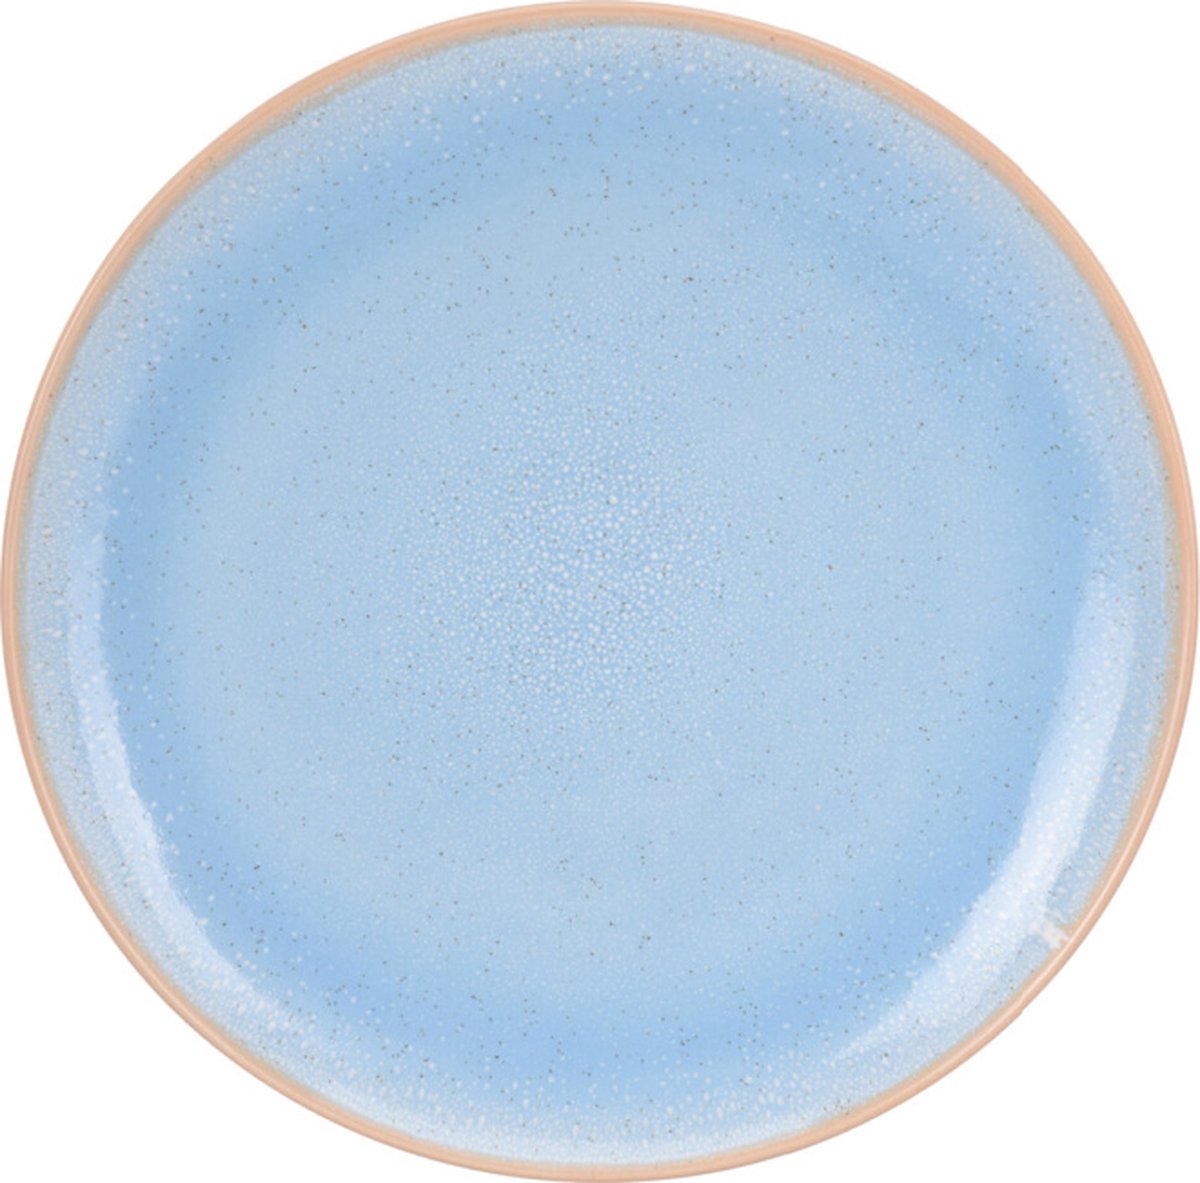 Siaki set van 4 porseleinen ontbijtbordjes in pastel blauw met reactief glazuur